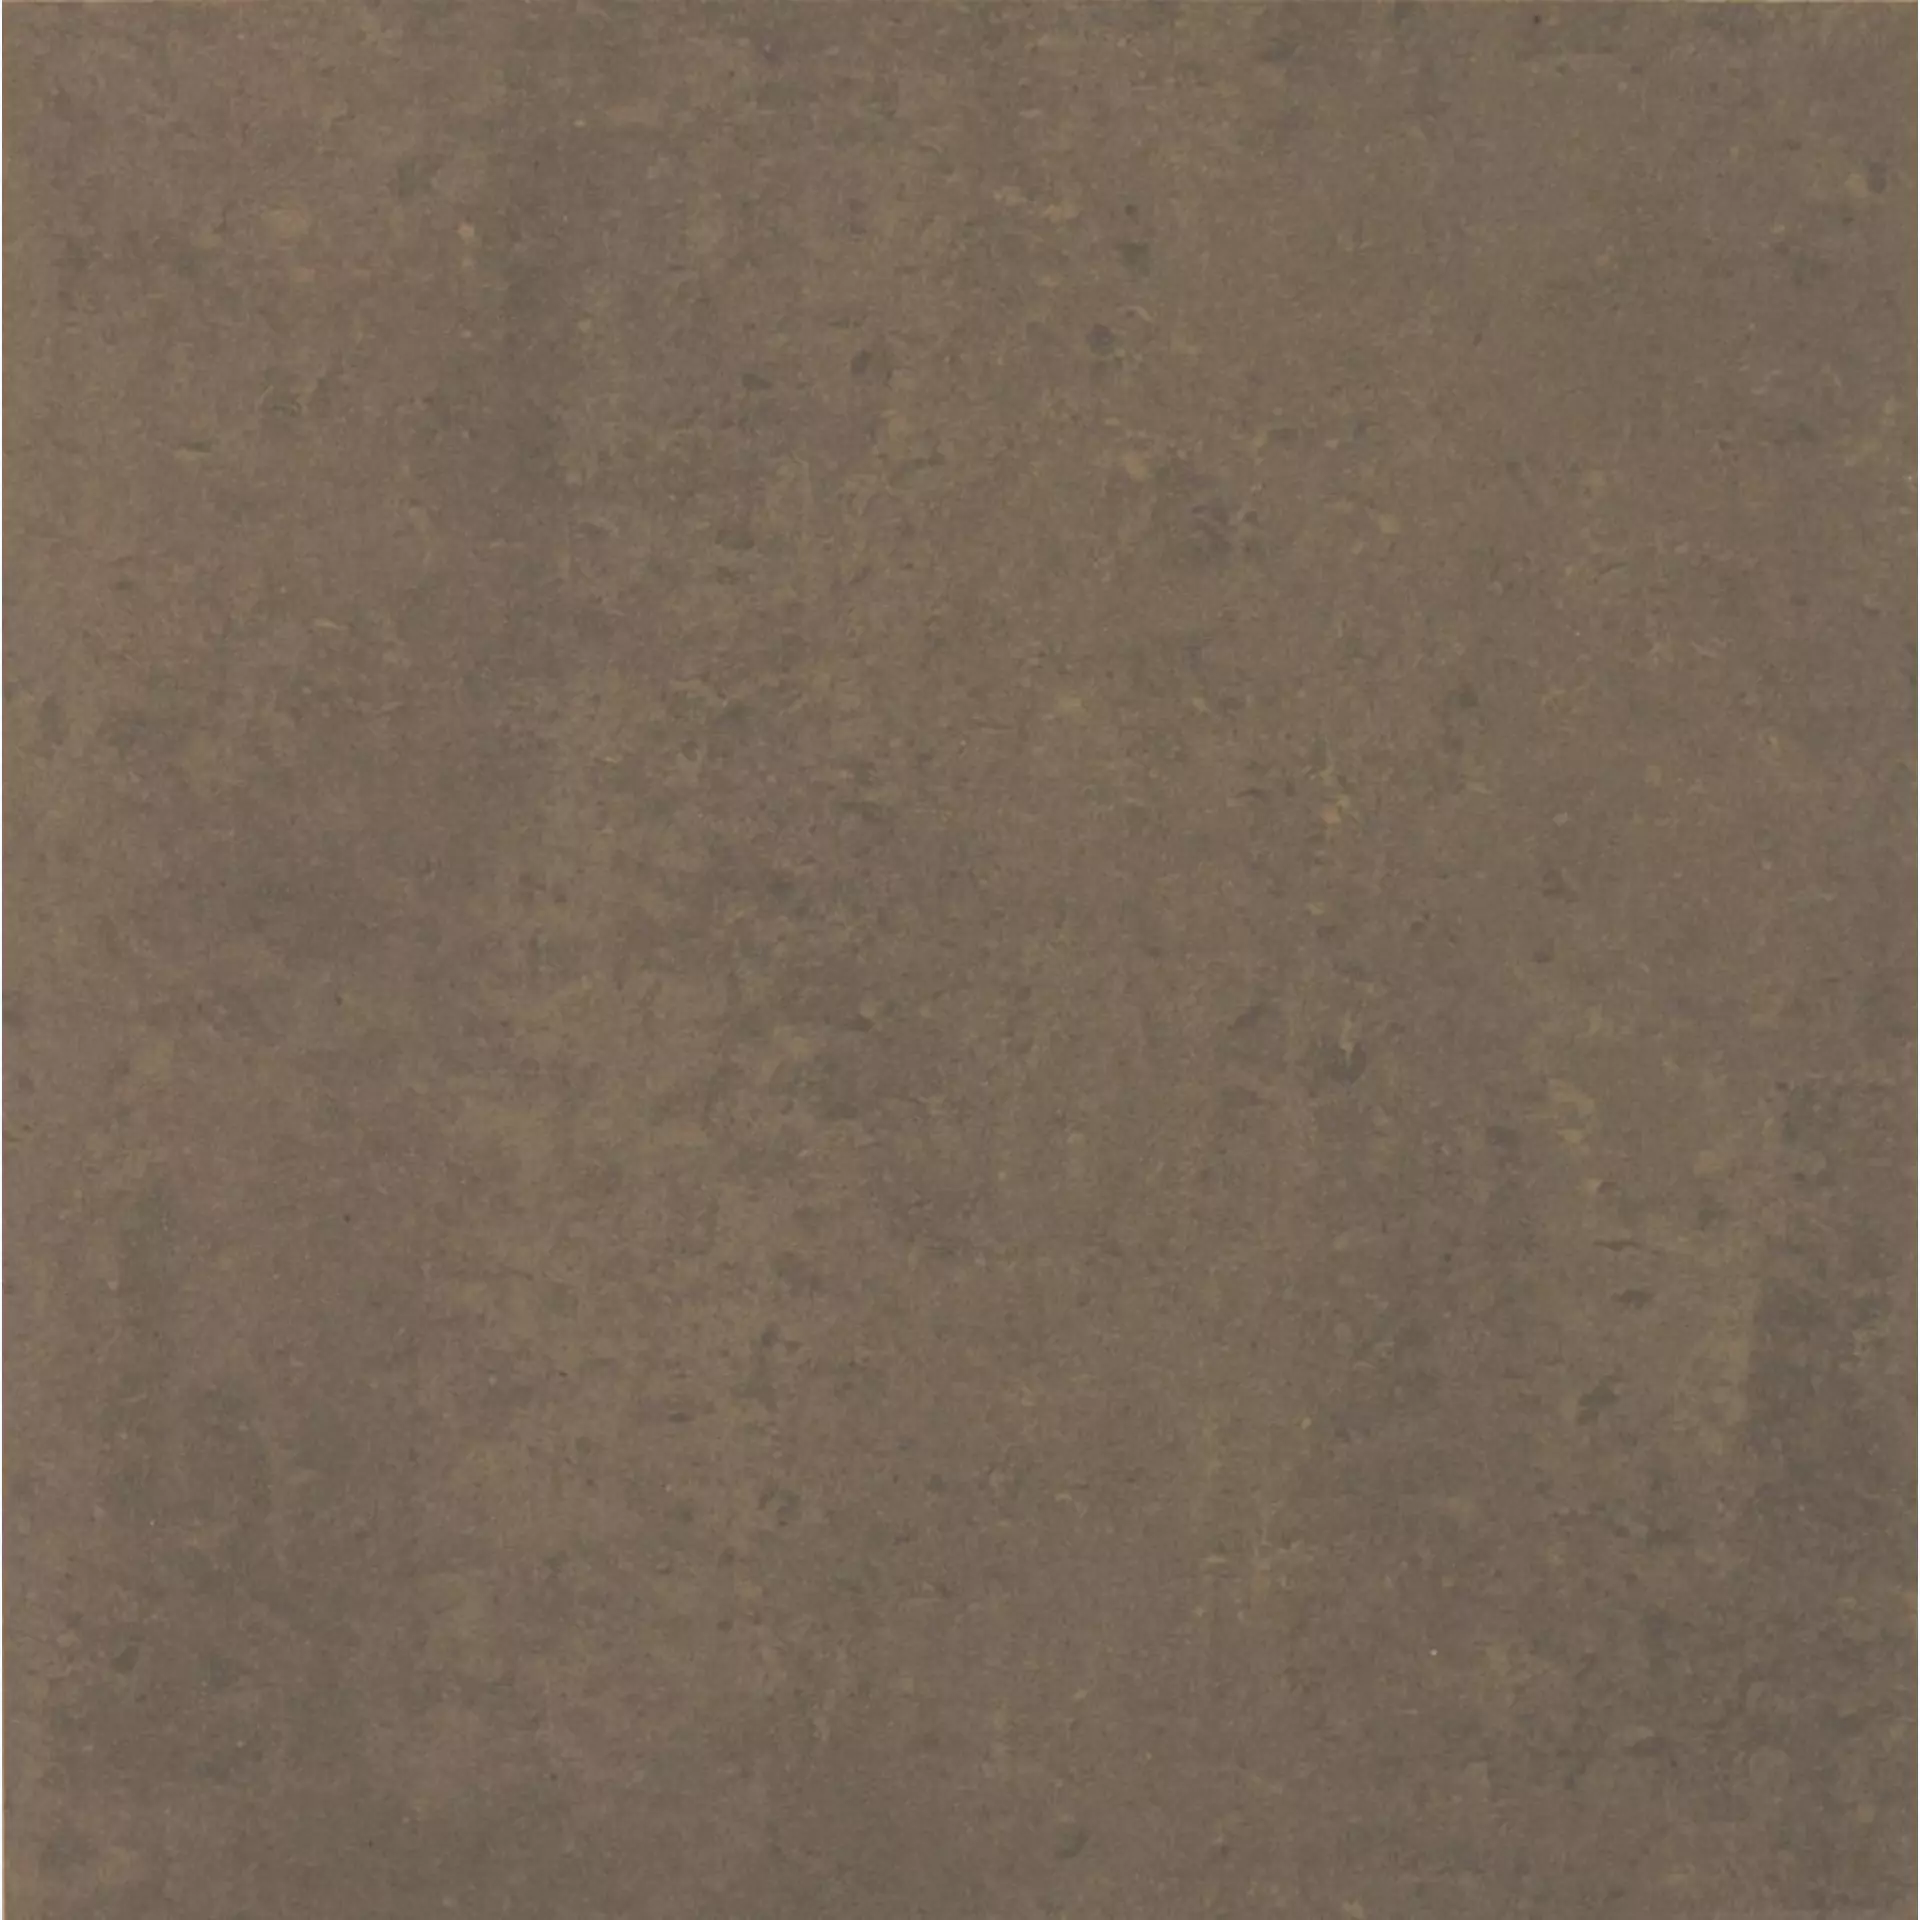 Casalgrande Marte Ramora Brown Naturale – Matt 7790045 30x60cm rectified 9,4mm